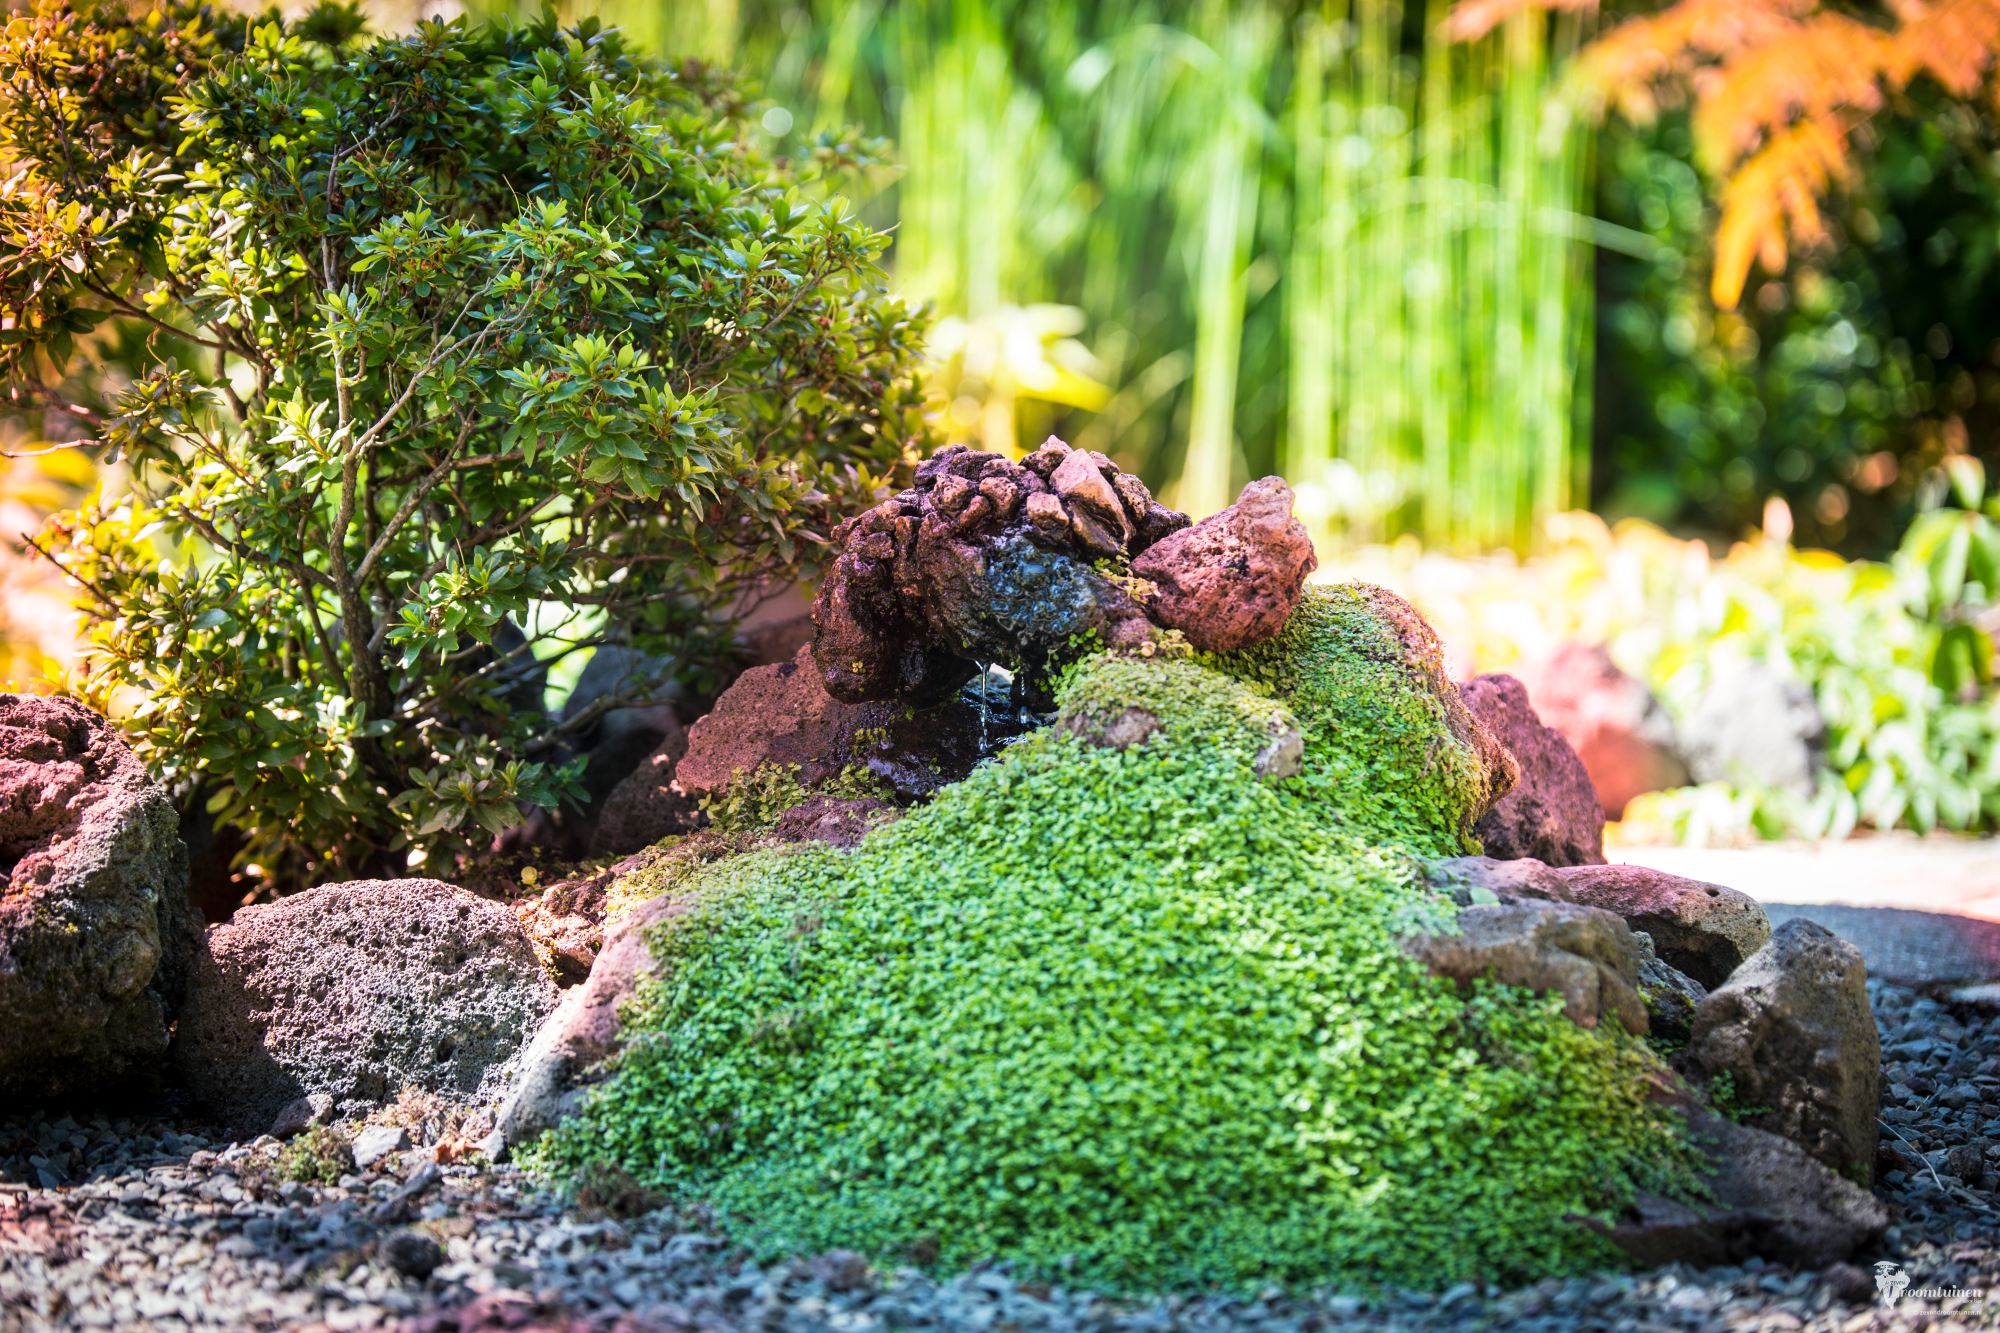 De miniatuur waterscene die zich al in het centrum onder de beoogde kroonvormige pergola bevindt. Juist de verfijning van deze scene gaat een sterk contrast vormen met de beplanting van de kroonvormige pergola.